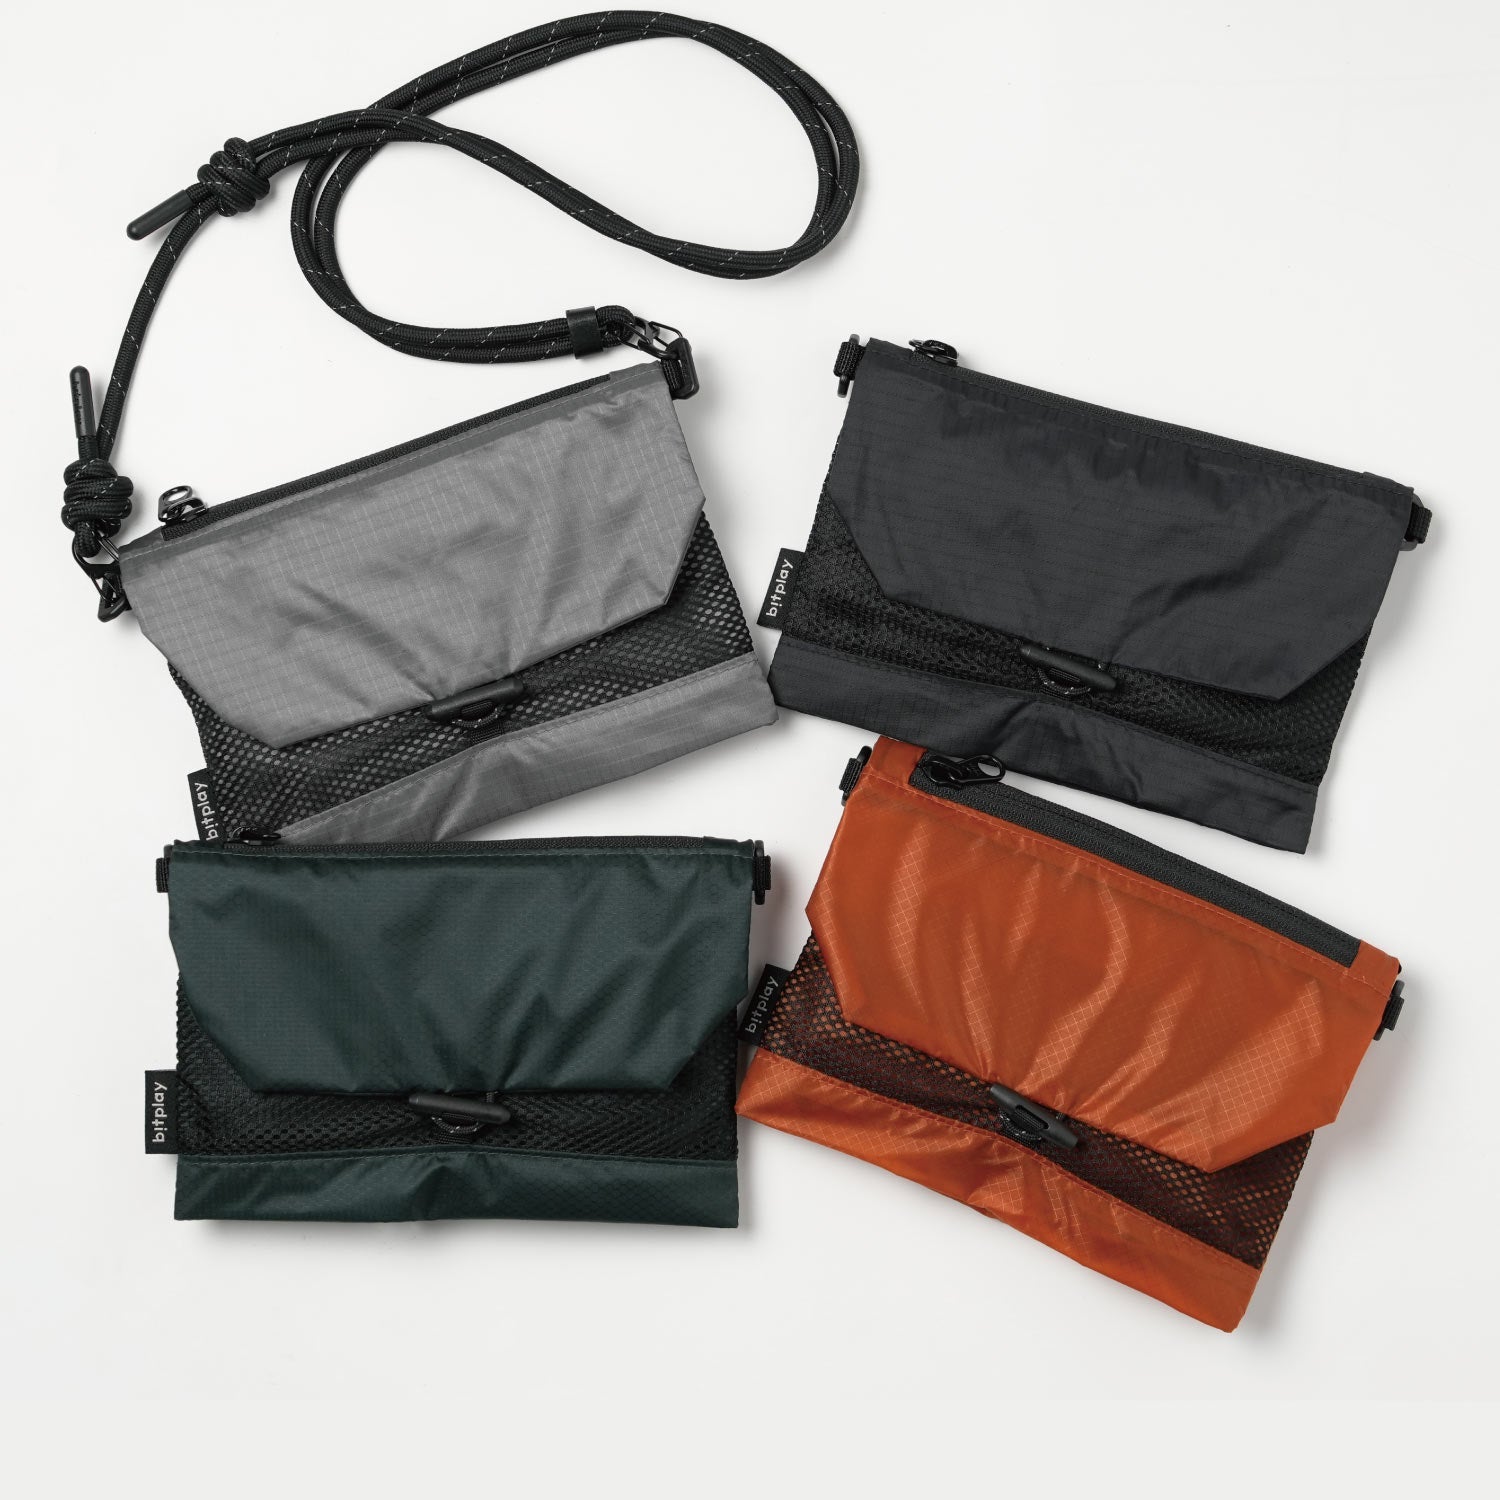 Foldable 2-Way Bag - Black